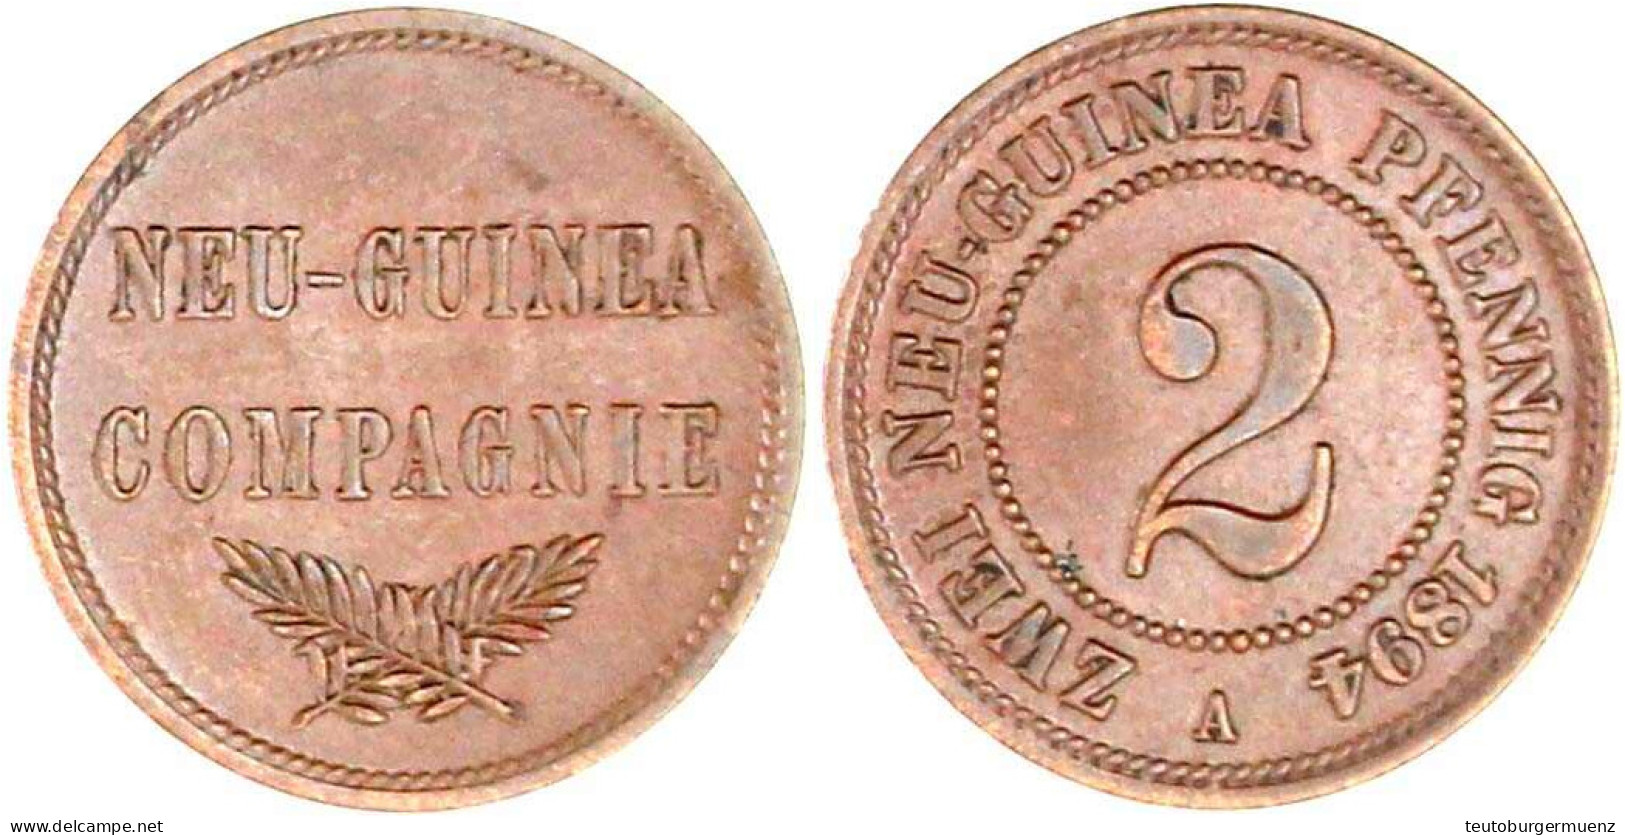 2 Neuguinea-Pfennig 1894 A. Vorzüglich. Jaeger 702. - Deutsch-Neuguinea